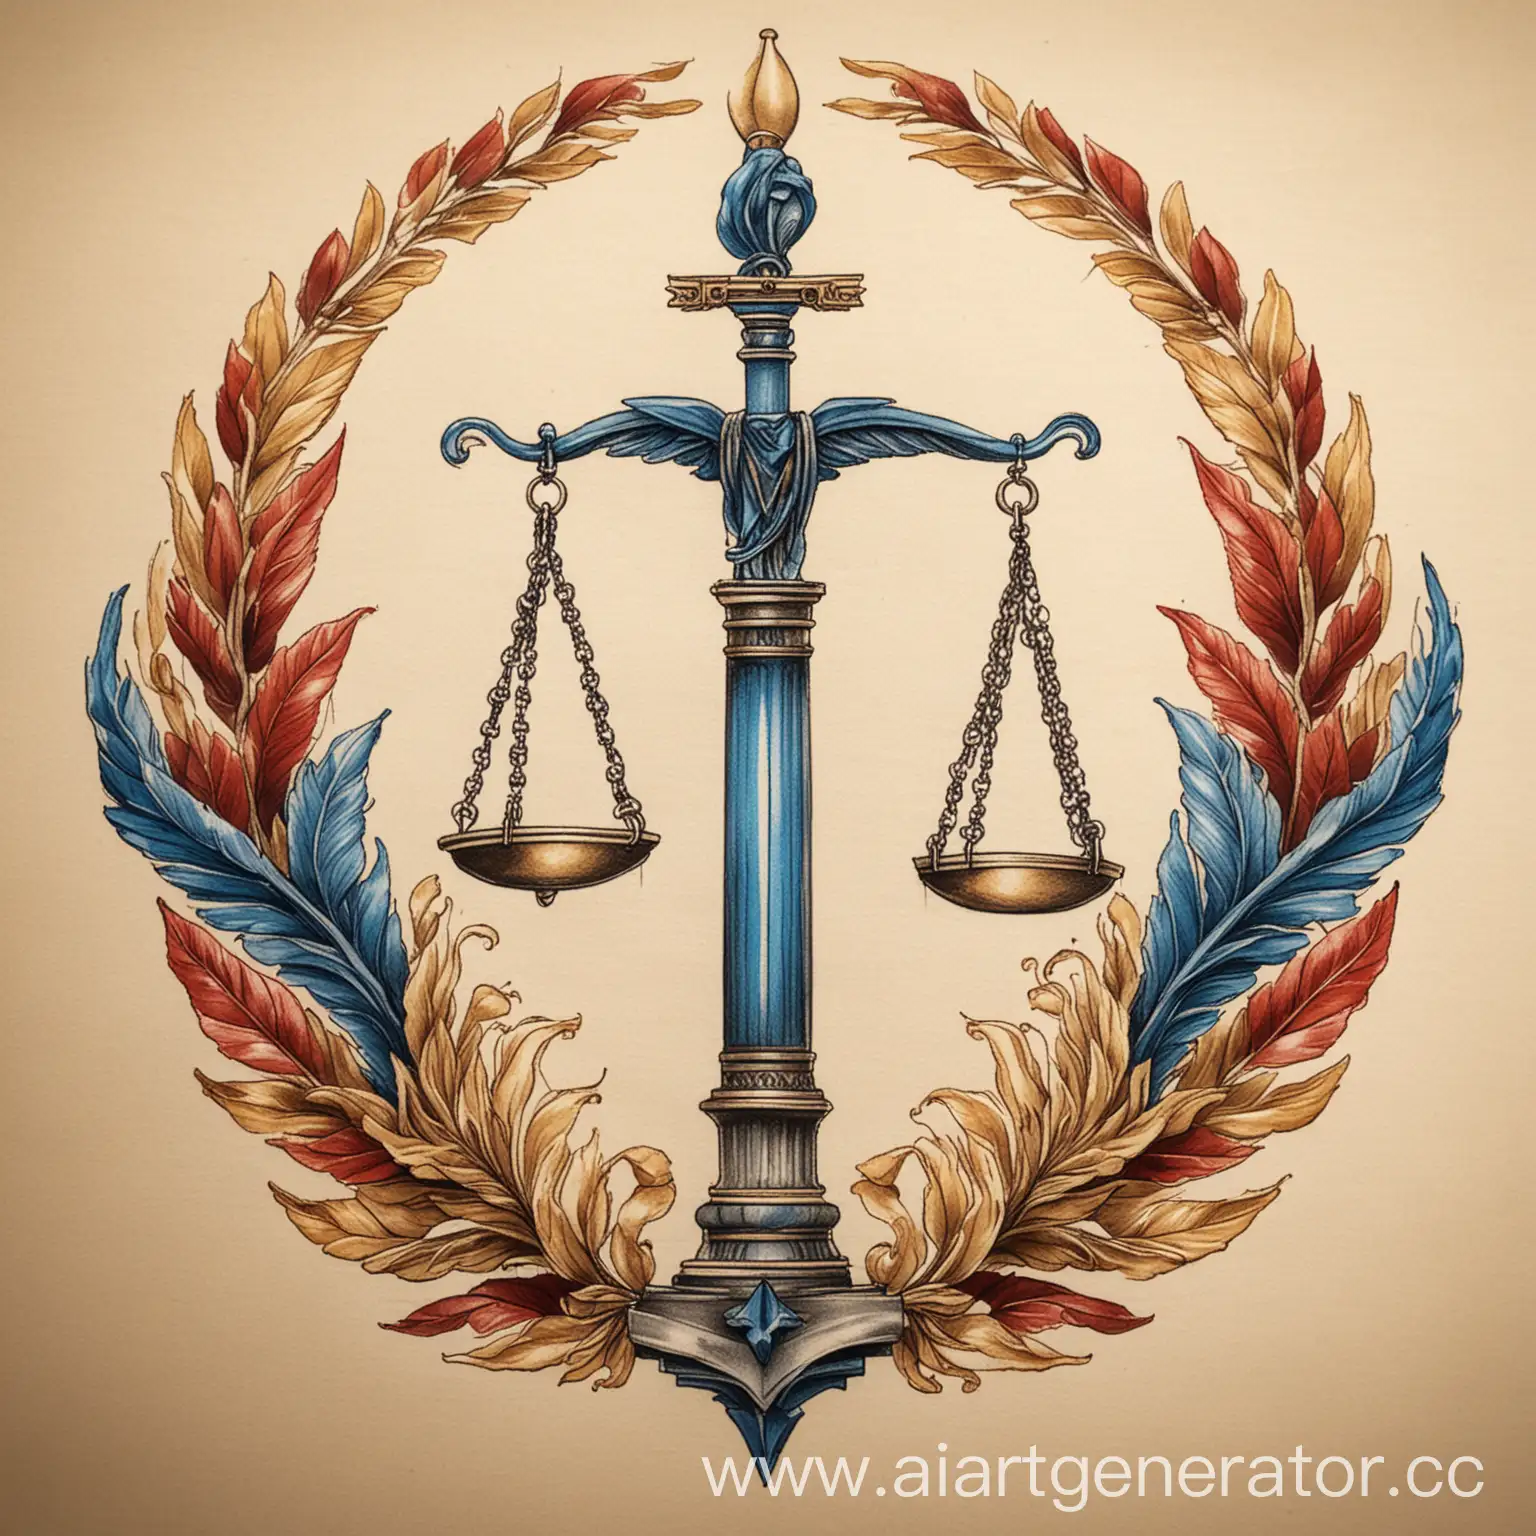 Эскиз для тату в стиле реализма, в цвете, преобладают синие, красные и золотые цвета. Тема эскиза весы правосудия, закон, право, древнегреческие колонны, папирусы, лавровые венки, мантия судьи. 